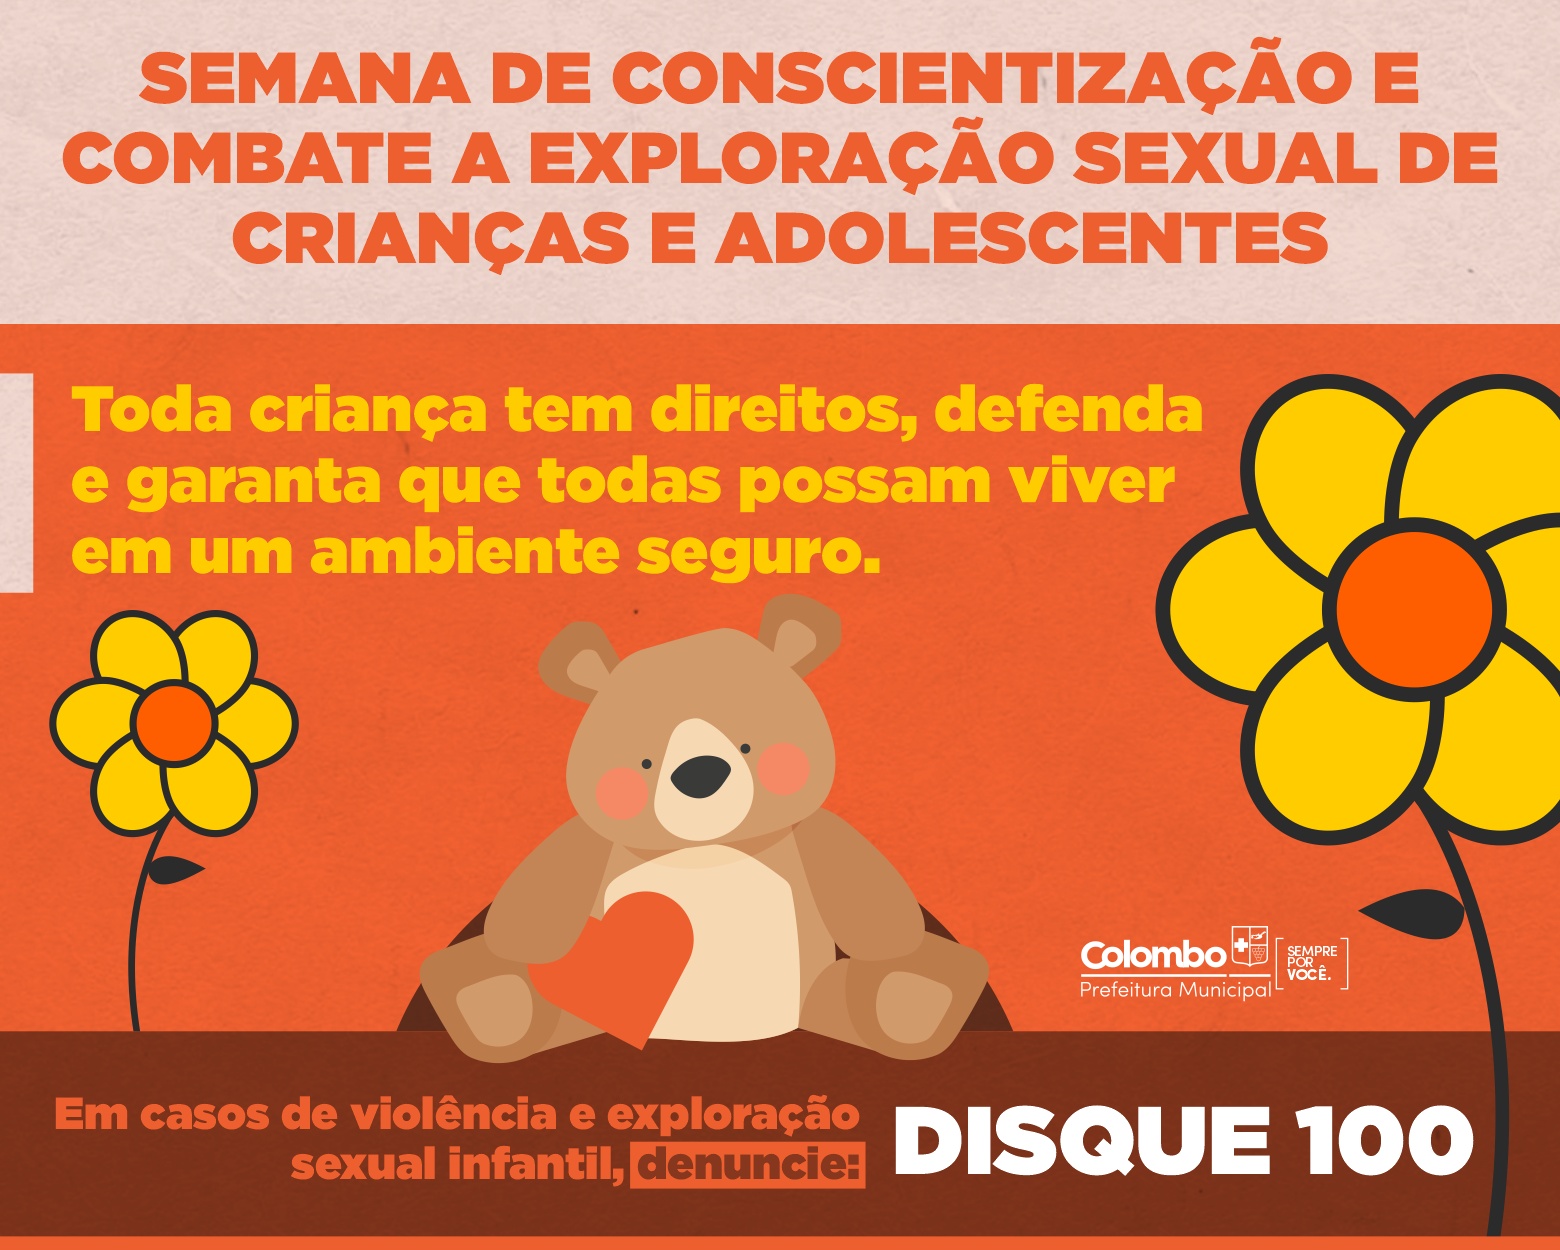 Colombo promove ações online de conscientização contra o abuso de crianças e adolescentes